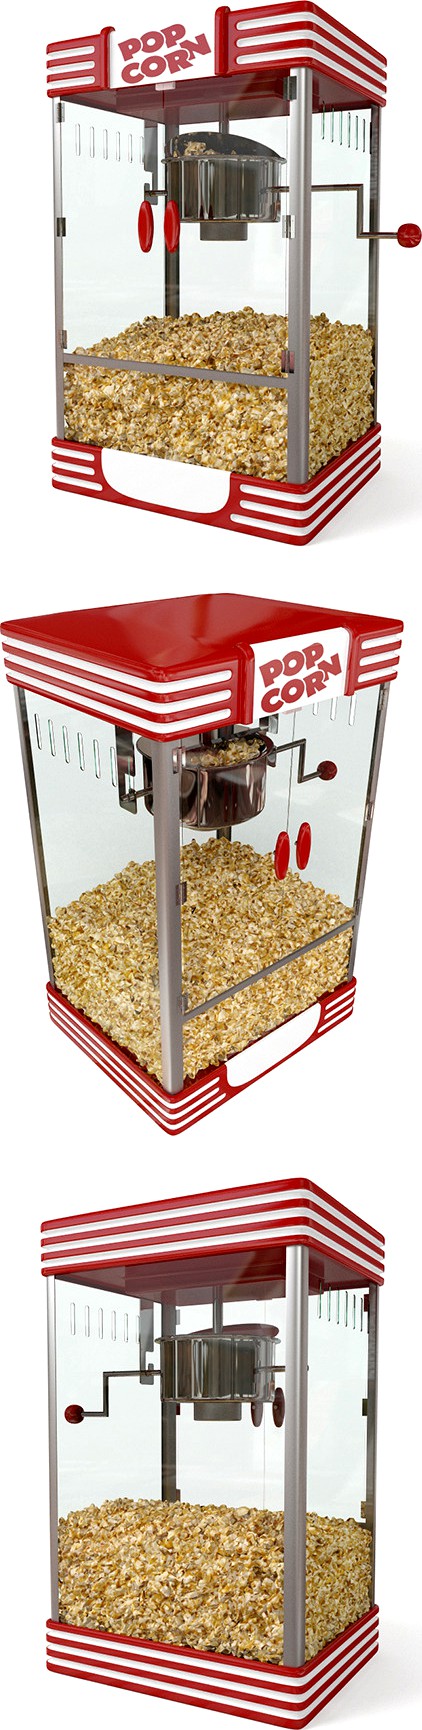 Big Popcorn machine